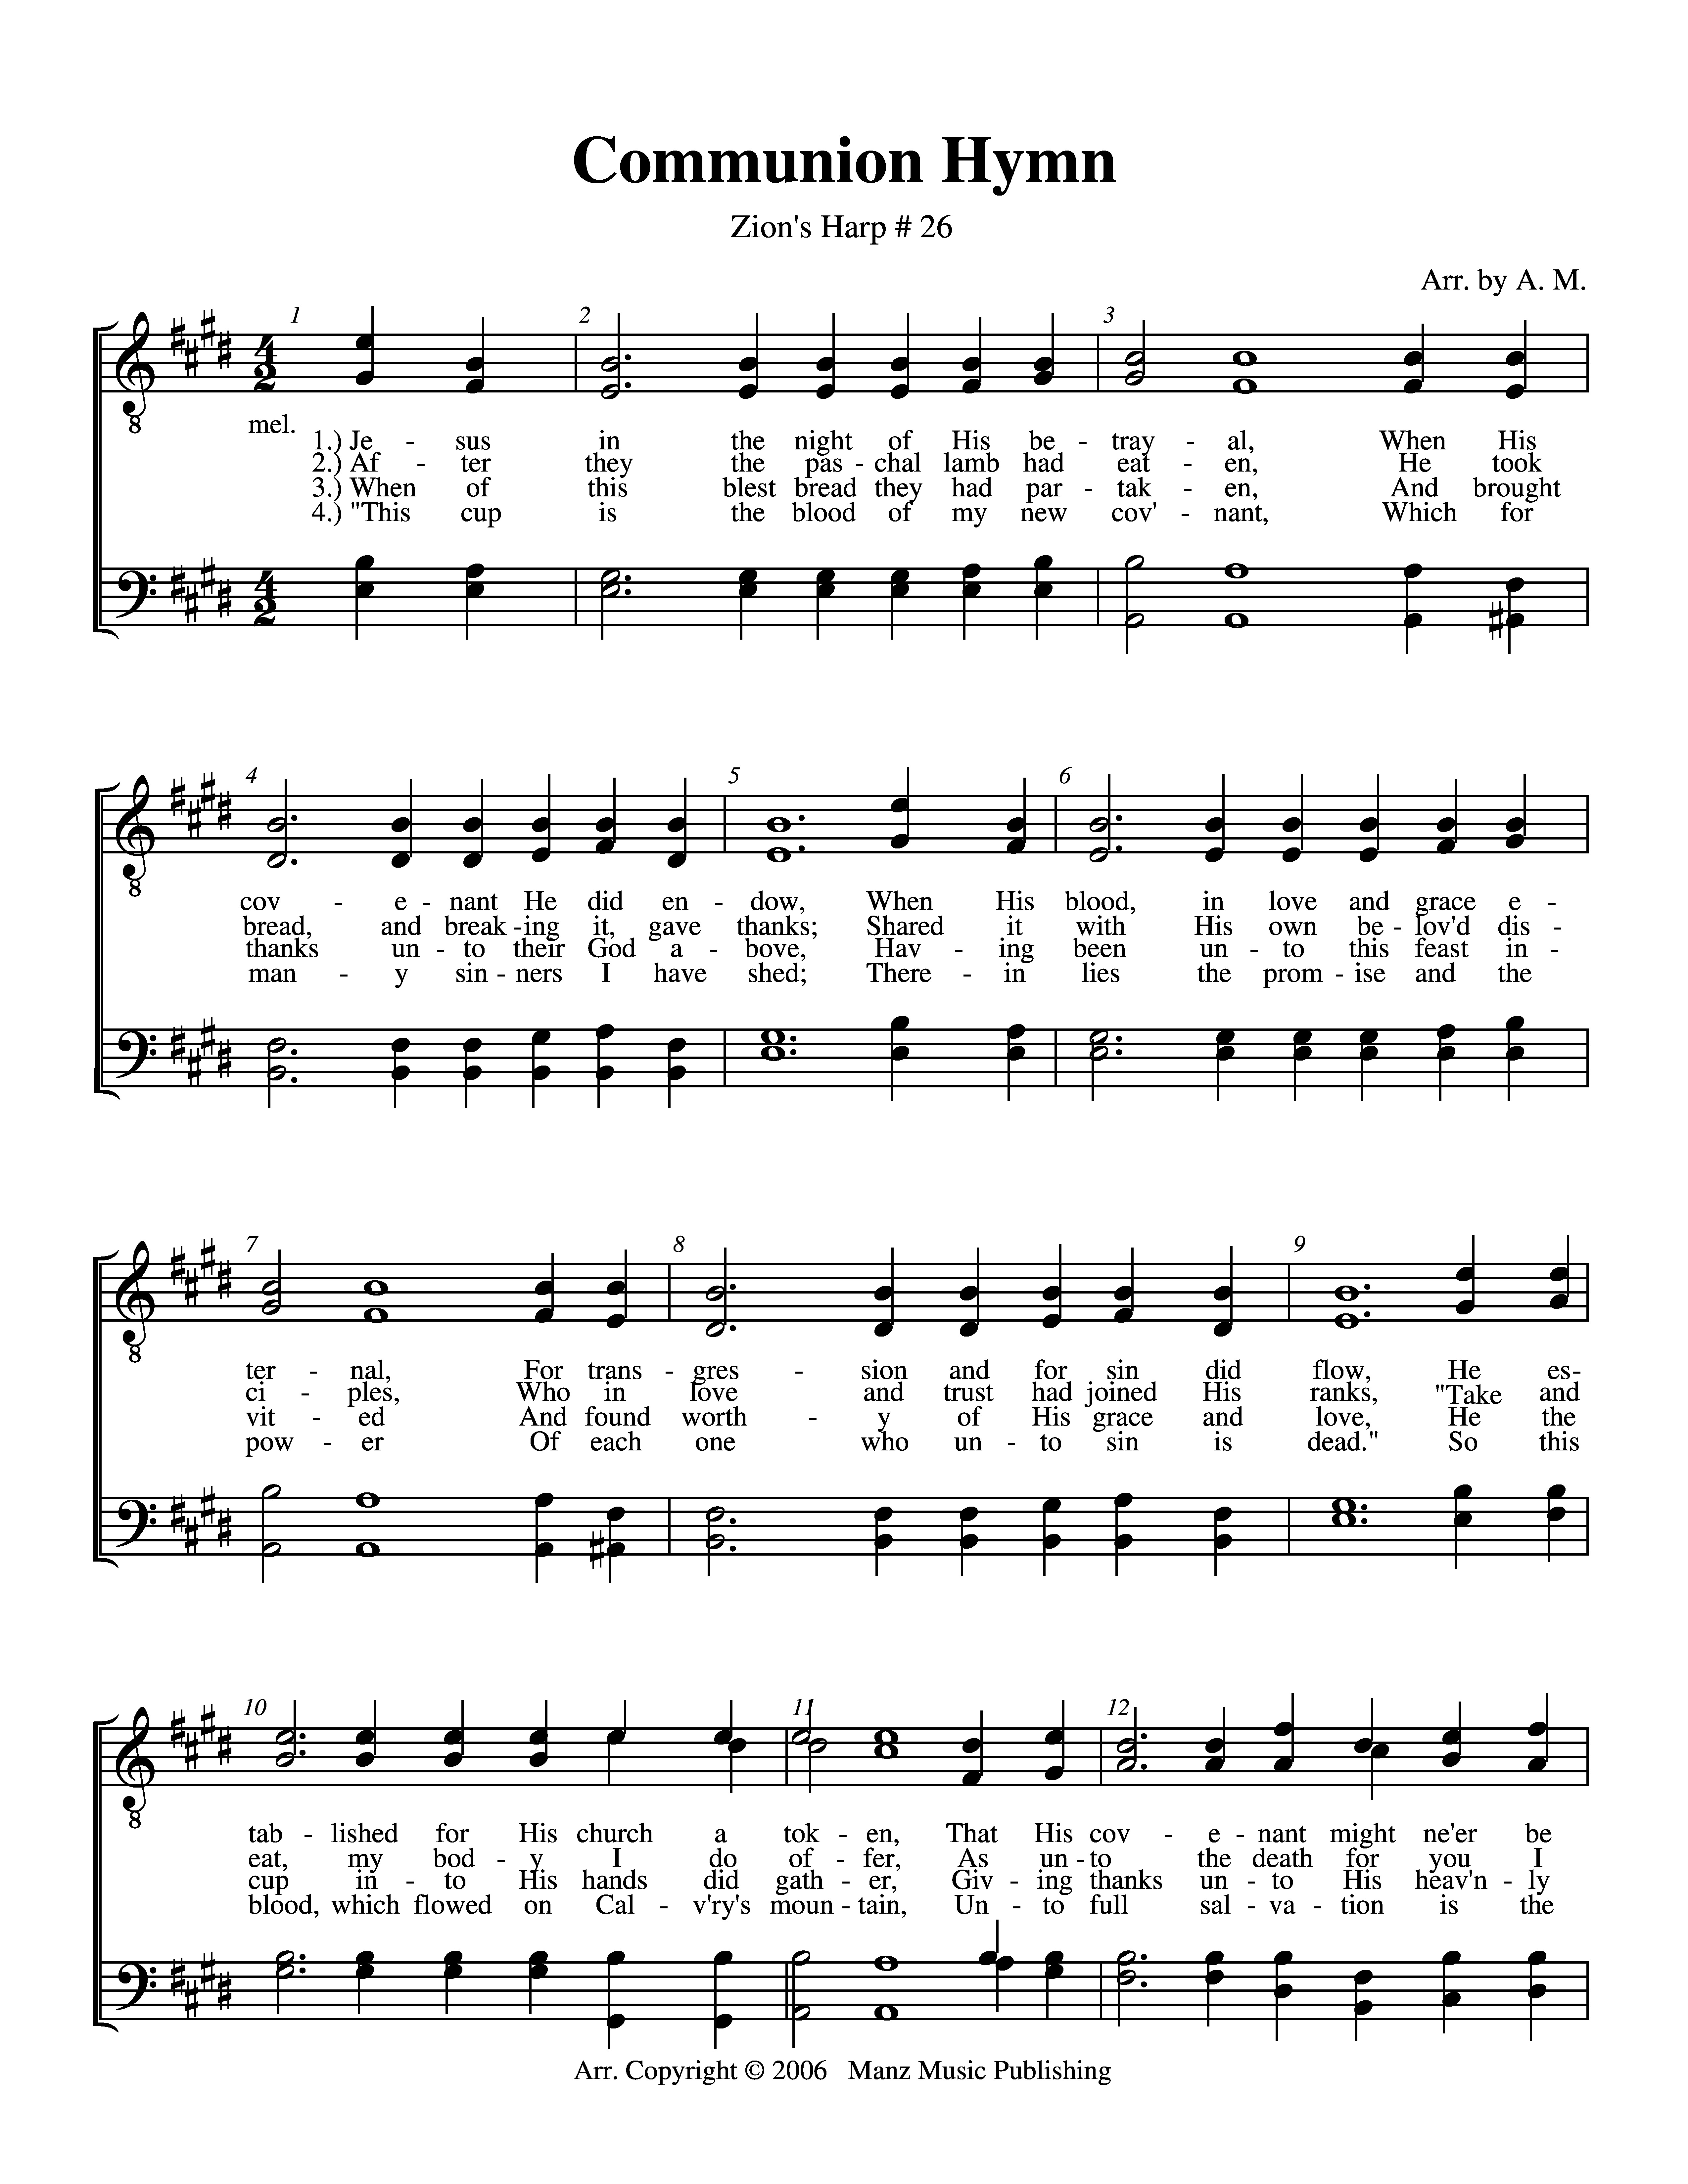 Communion Hymn (ZH 26) page 1